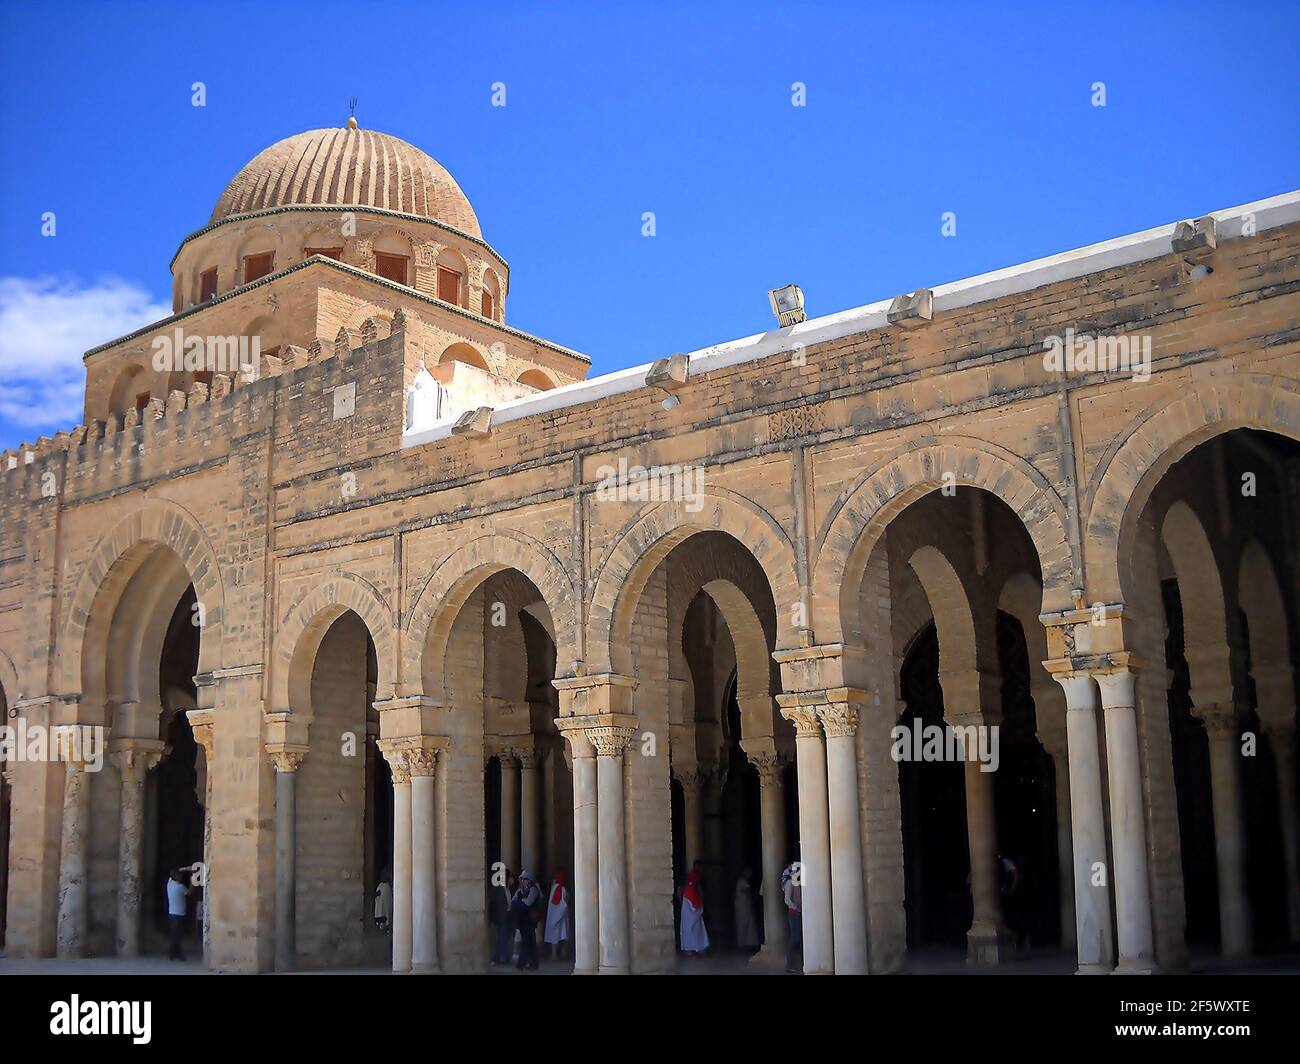 Uqba Moschee, auch bekannt als die große Moschee, wurde von ʿUqba B.. Nāfiʿ von 670 und galt als Vorbild für alle nachfolgenden Maghreb-Moscheen. Stockfoto